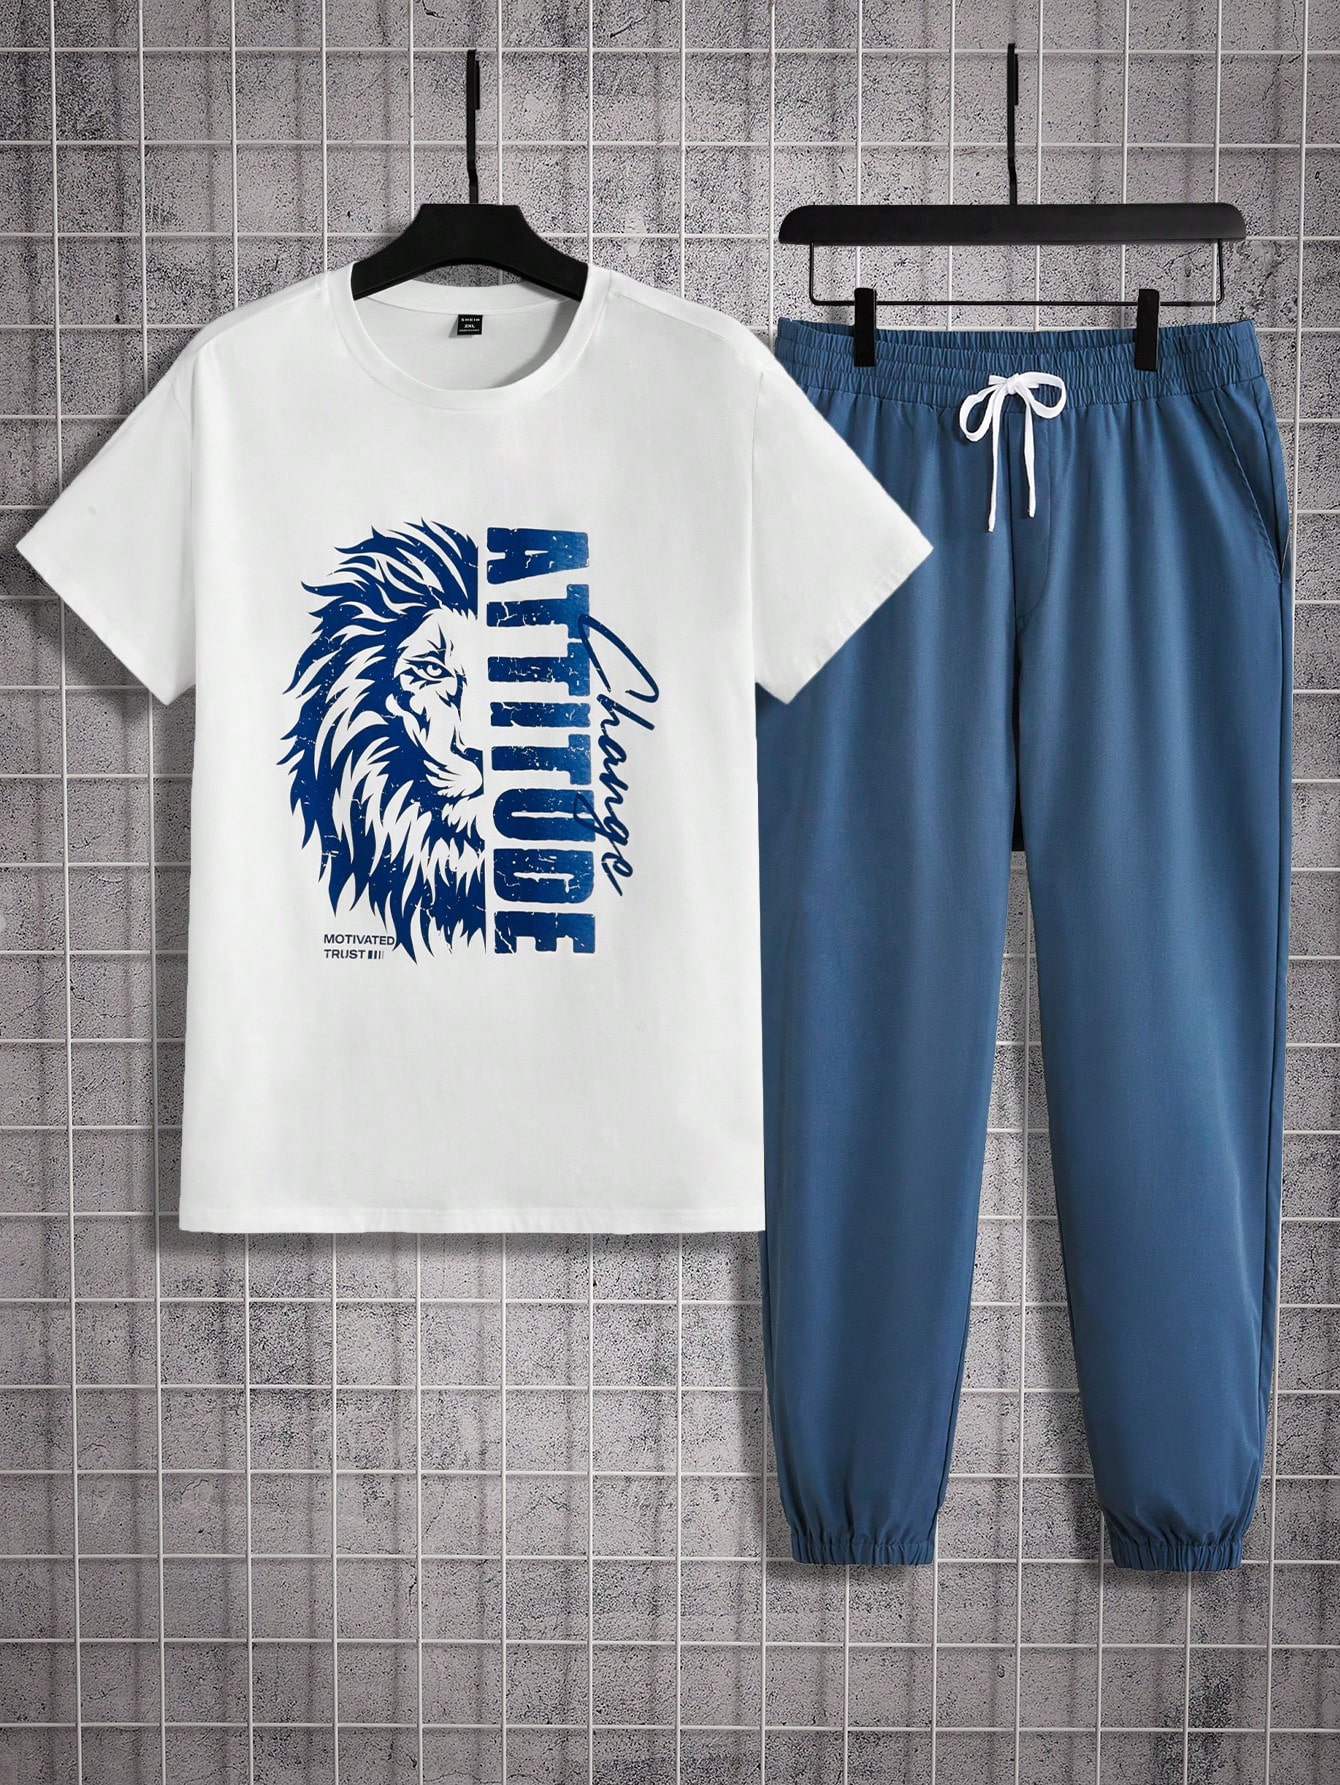 Мужская футболка и спортивные штаны с короткими рукавами и принтом льва и букв Manfinity Homme больших размеров, синий и белый